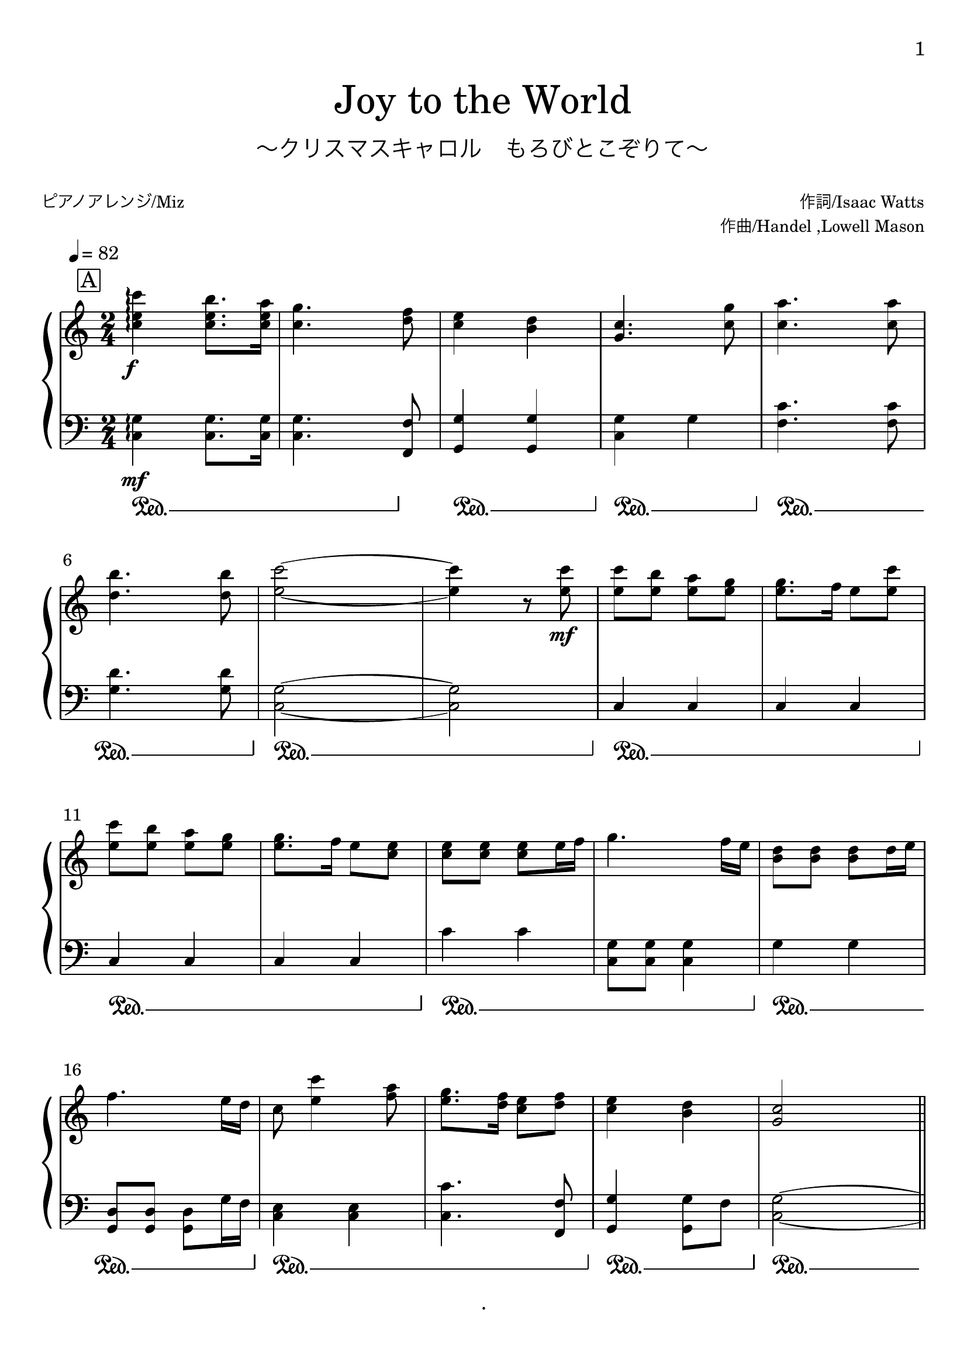 ヘンデル/Lowell Mason/Isaac Watts - Joy to the World ジョイ・トゥ・ザ・ワールド／もろびとこぞりて (ピアノソロ) by Miz